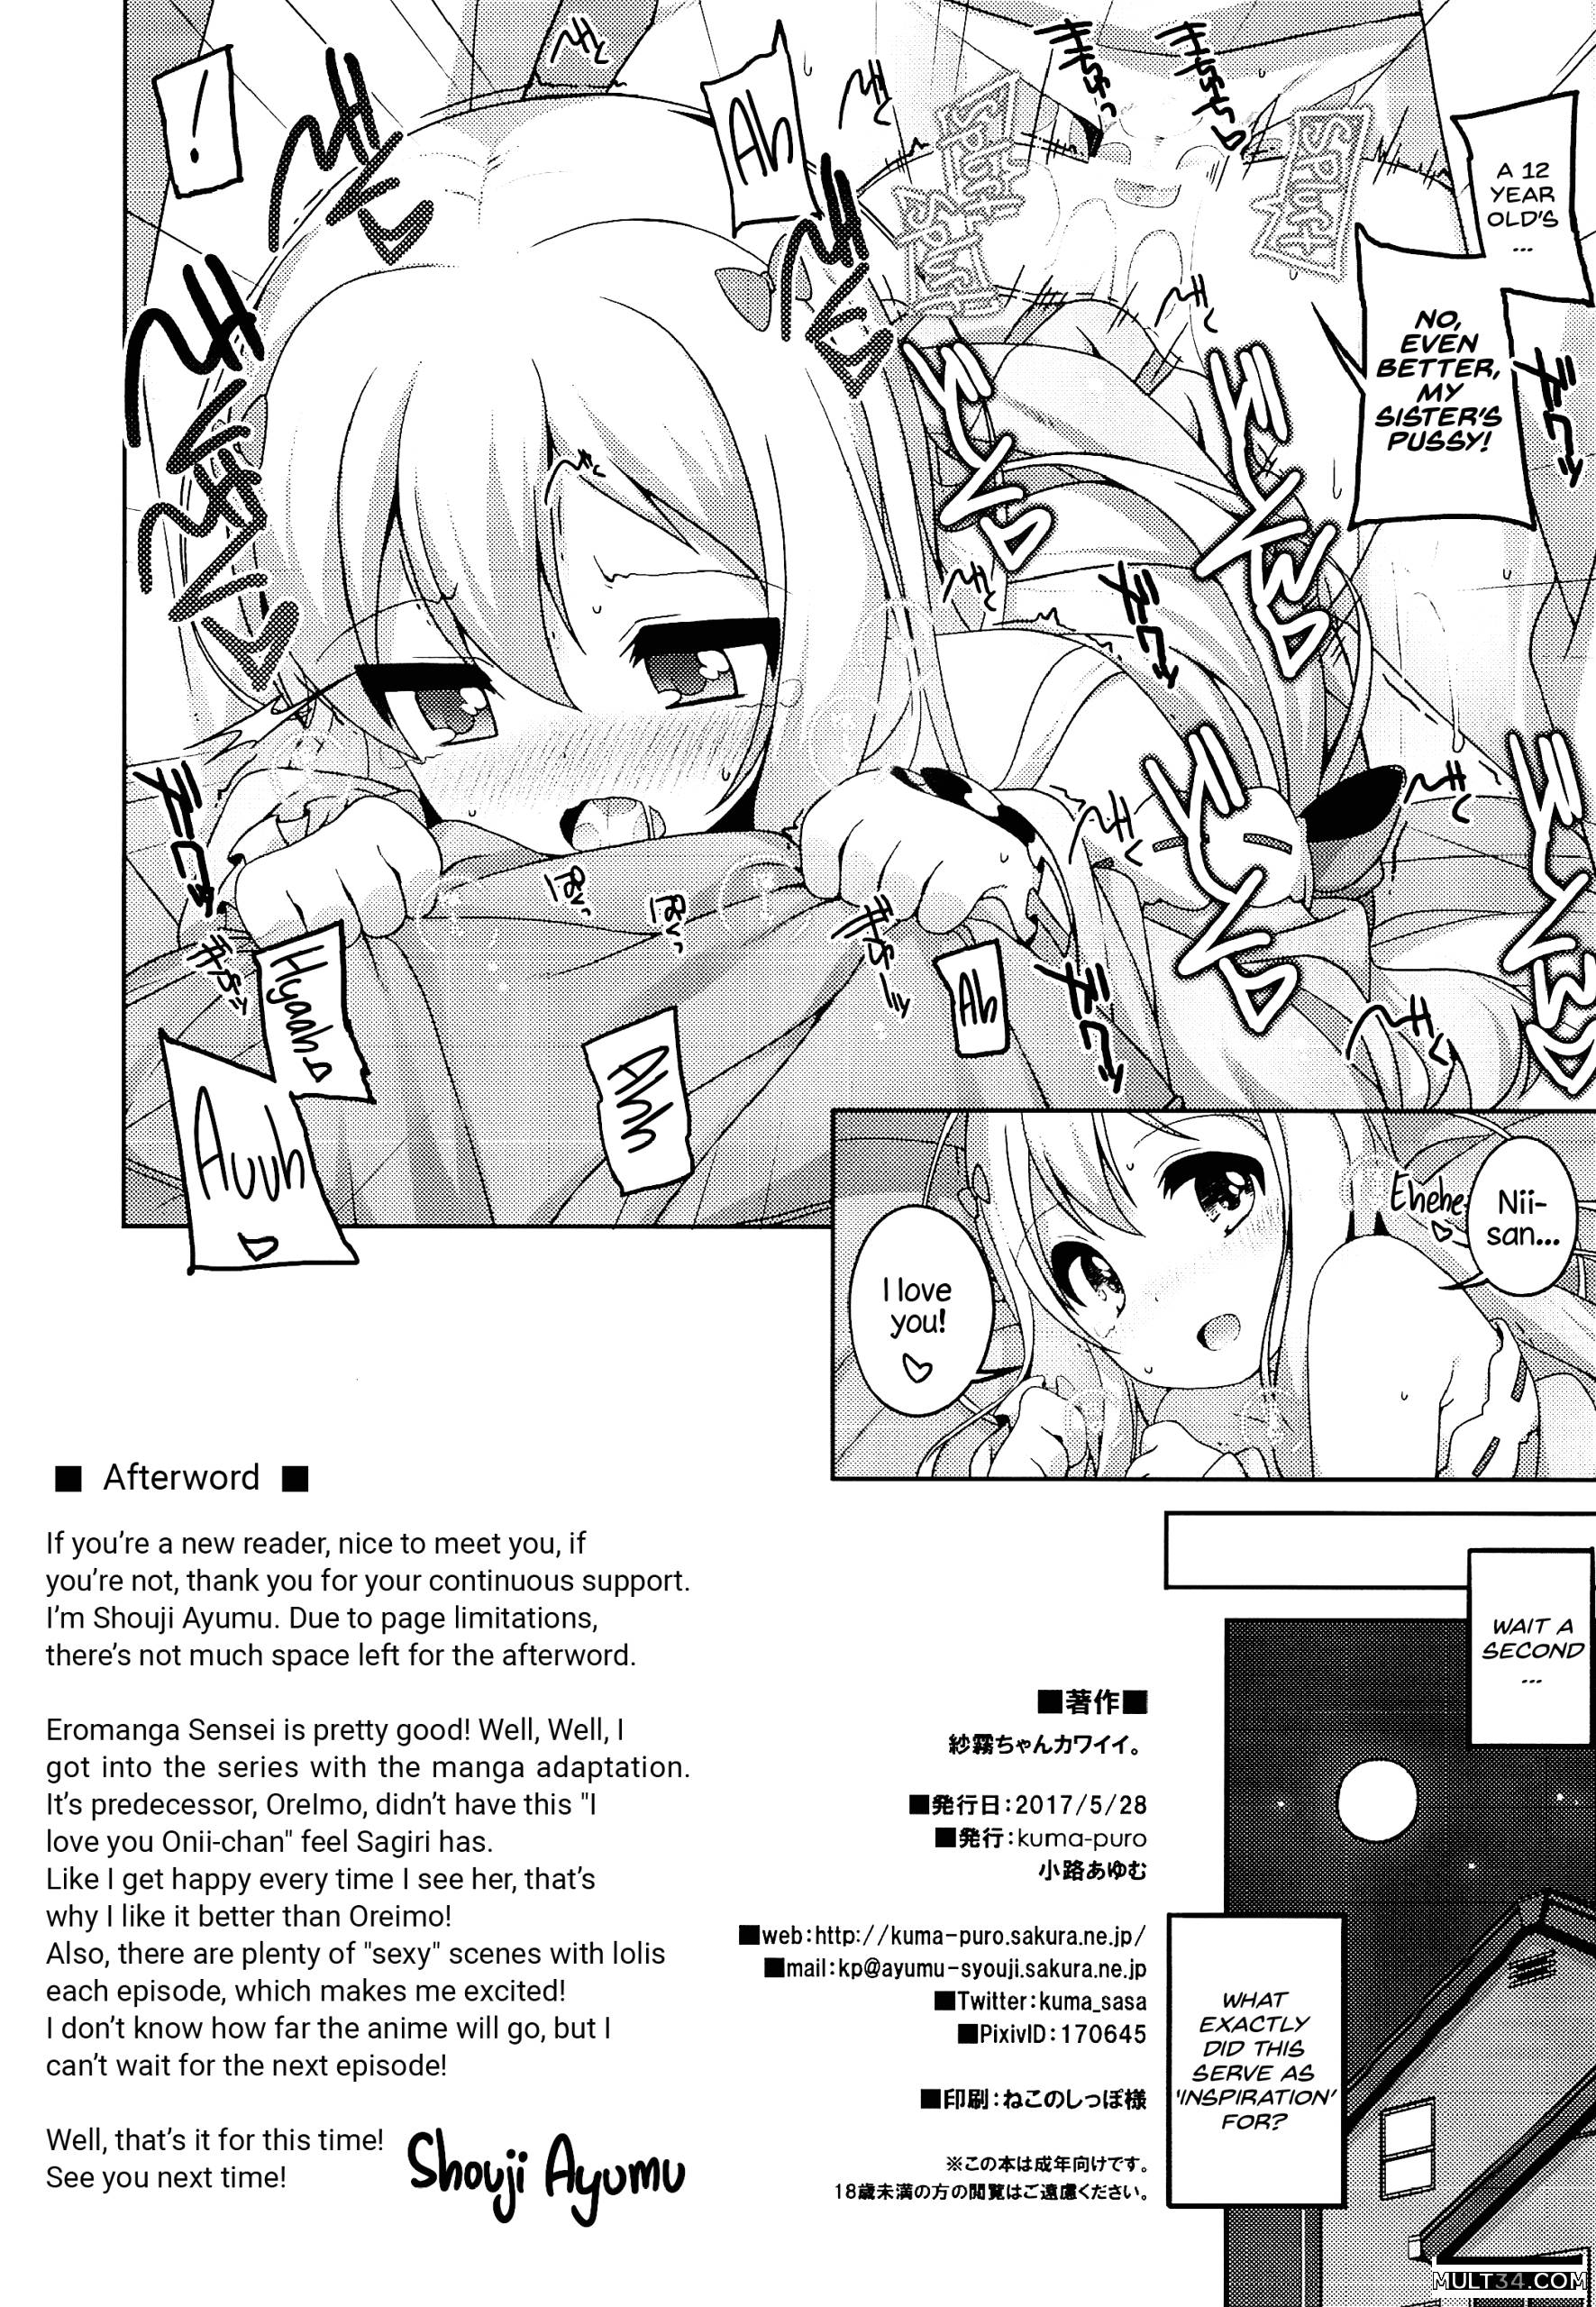 Sagiri-chan is cute page 9